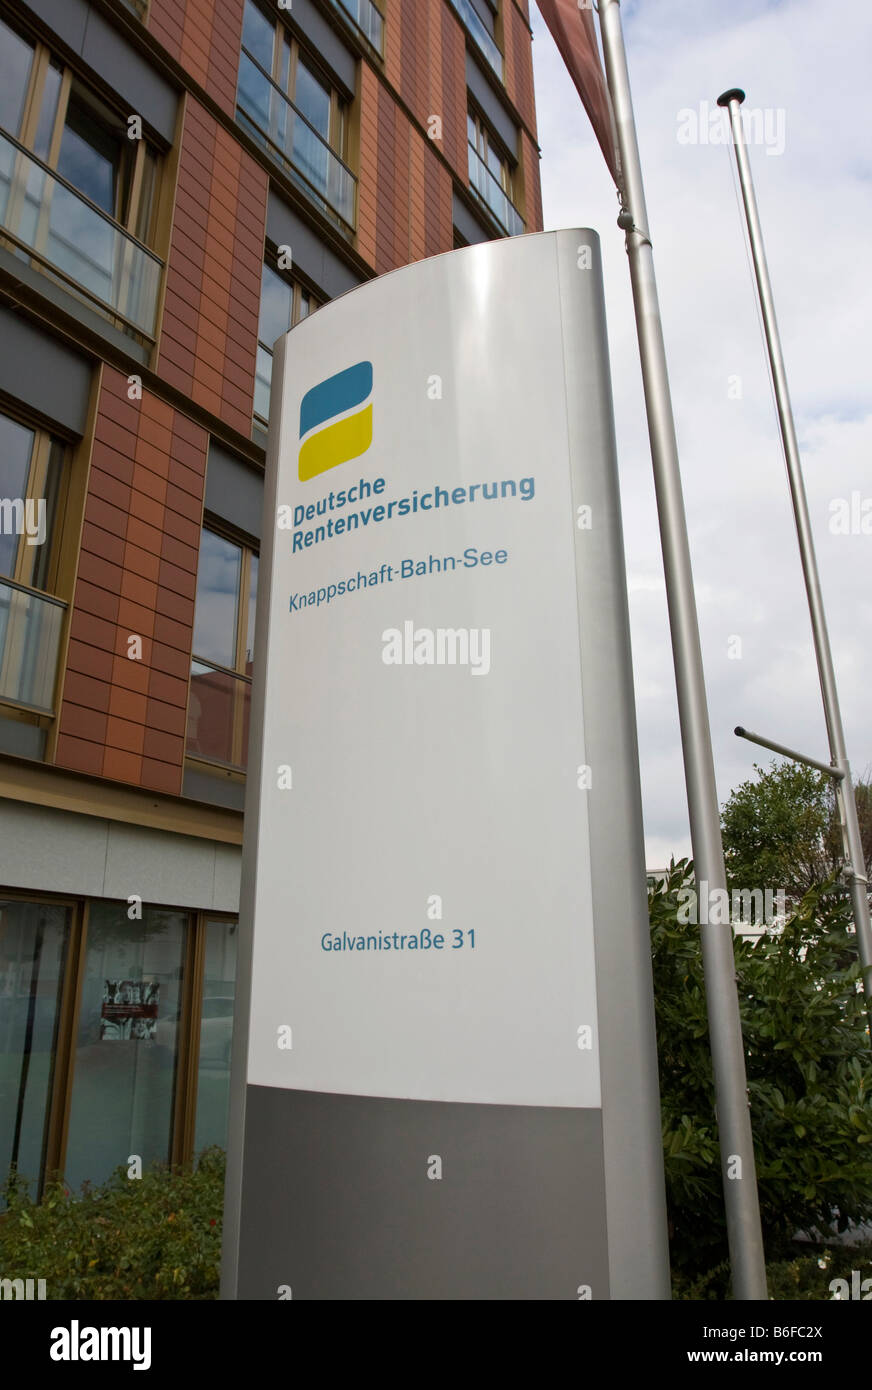 Deutsche Rentenversicherung, German Pension Insurance, logo and signage, Frankfurt, Hesse, Germany, Europe Stock Photo